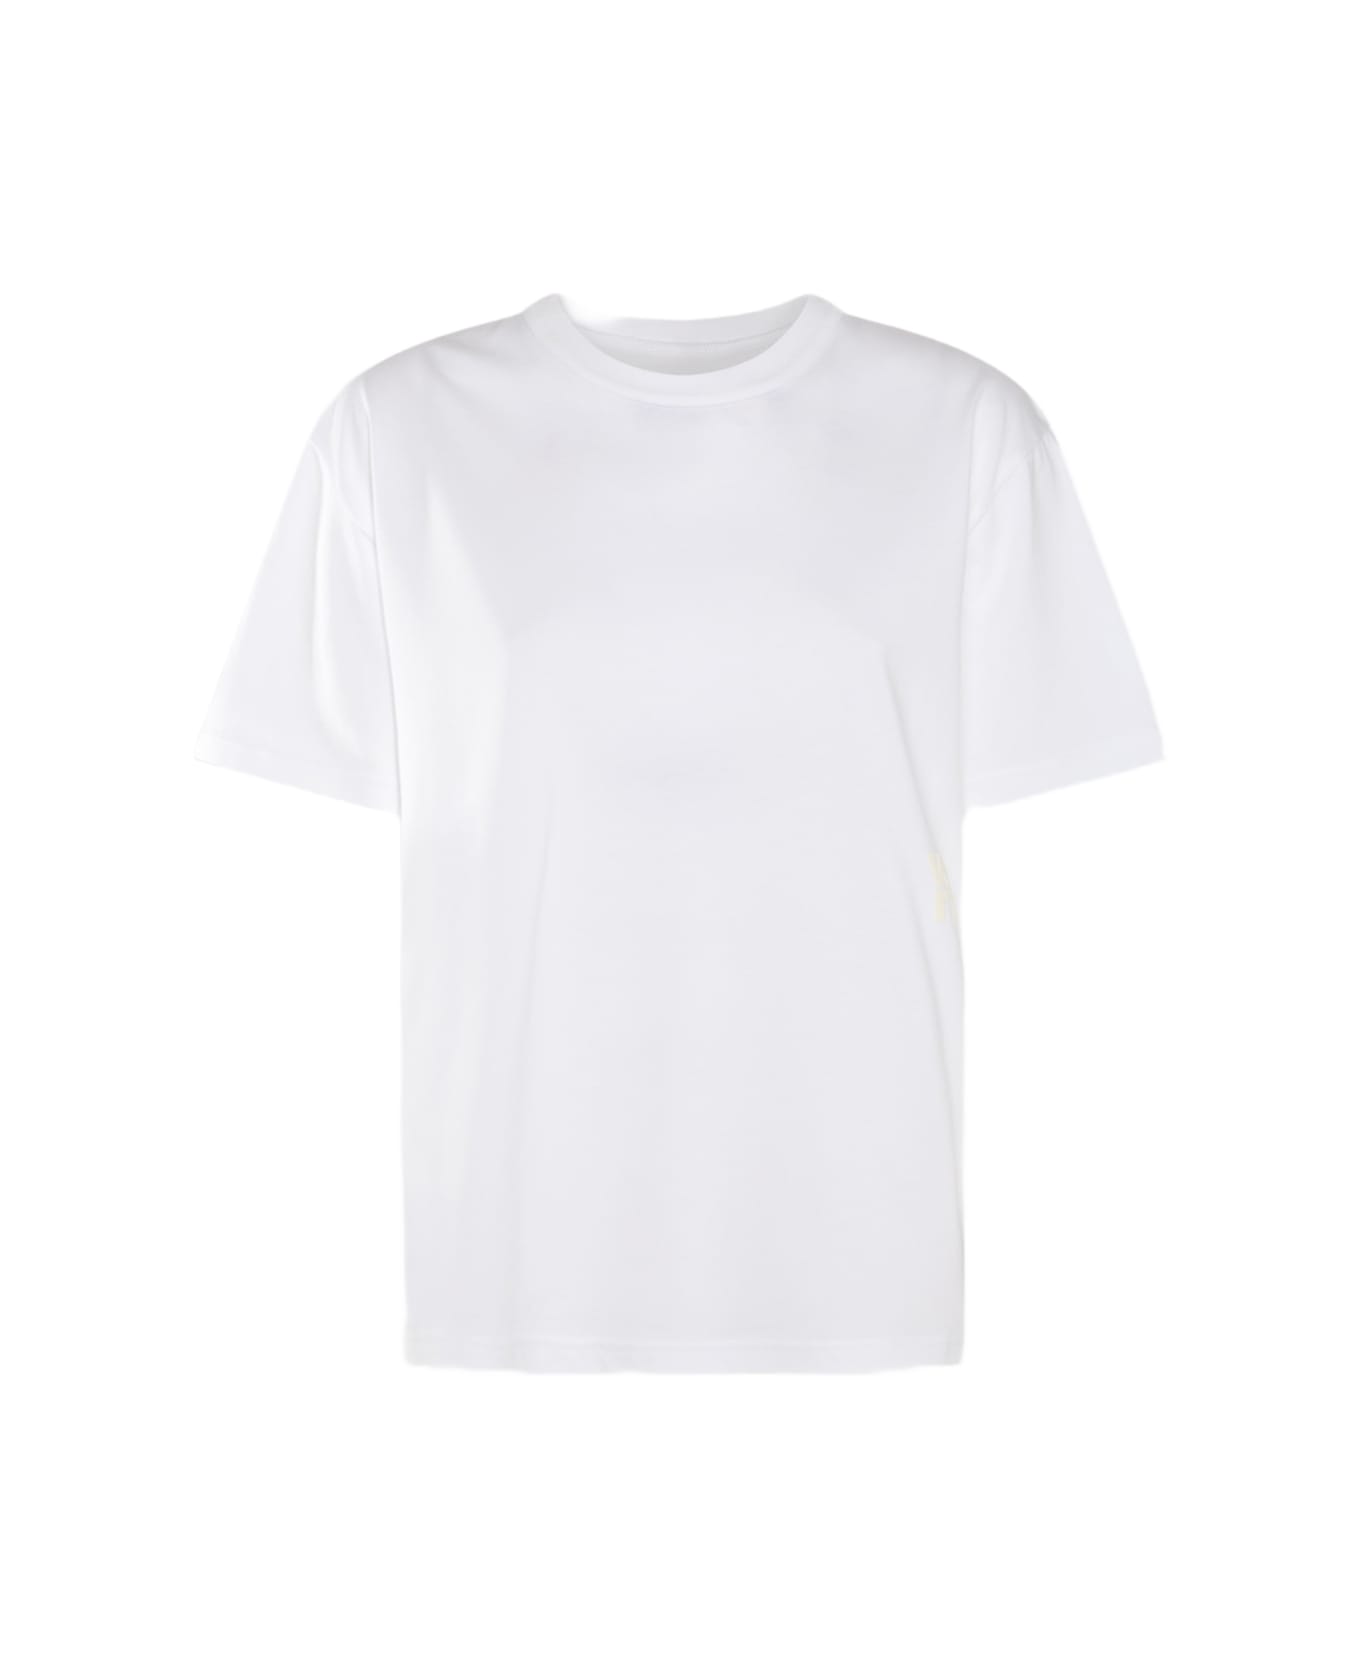 Alexander Wang White Cotton T-shirt - White Tシャツ